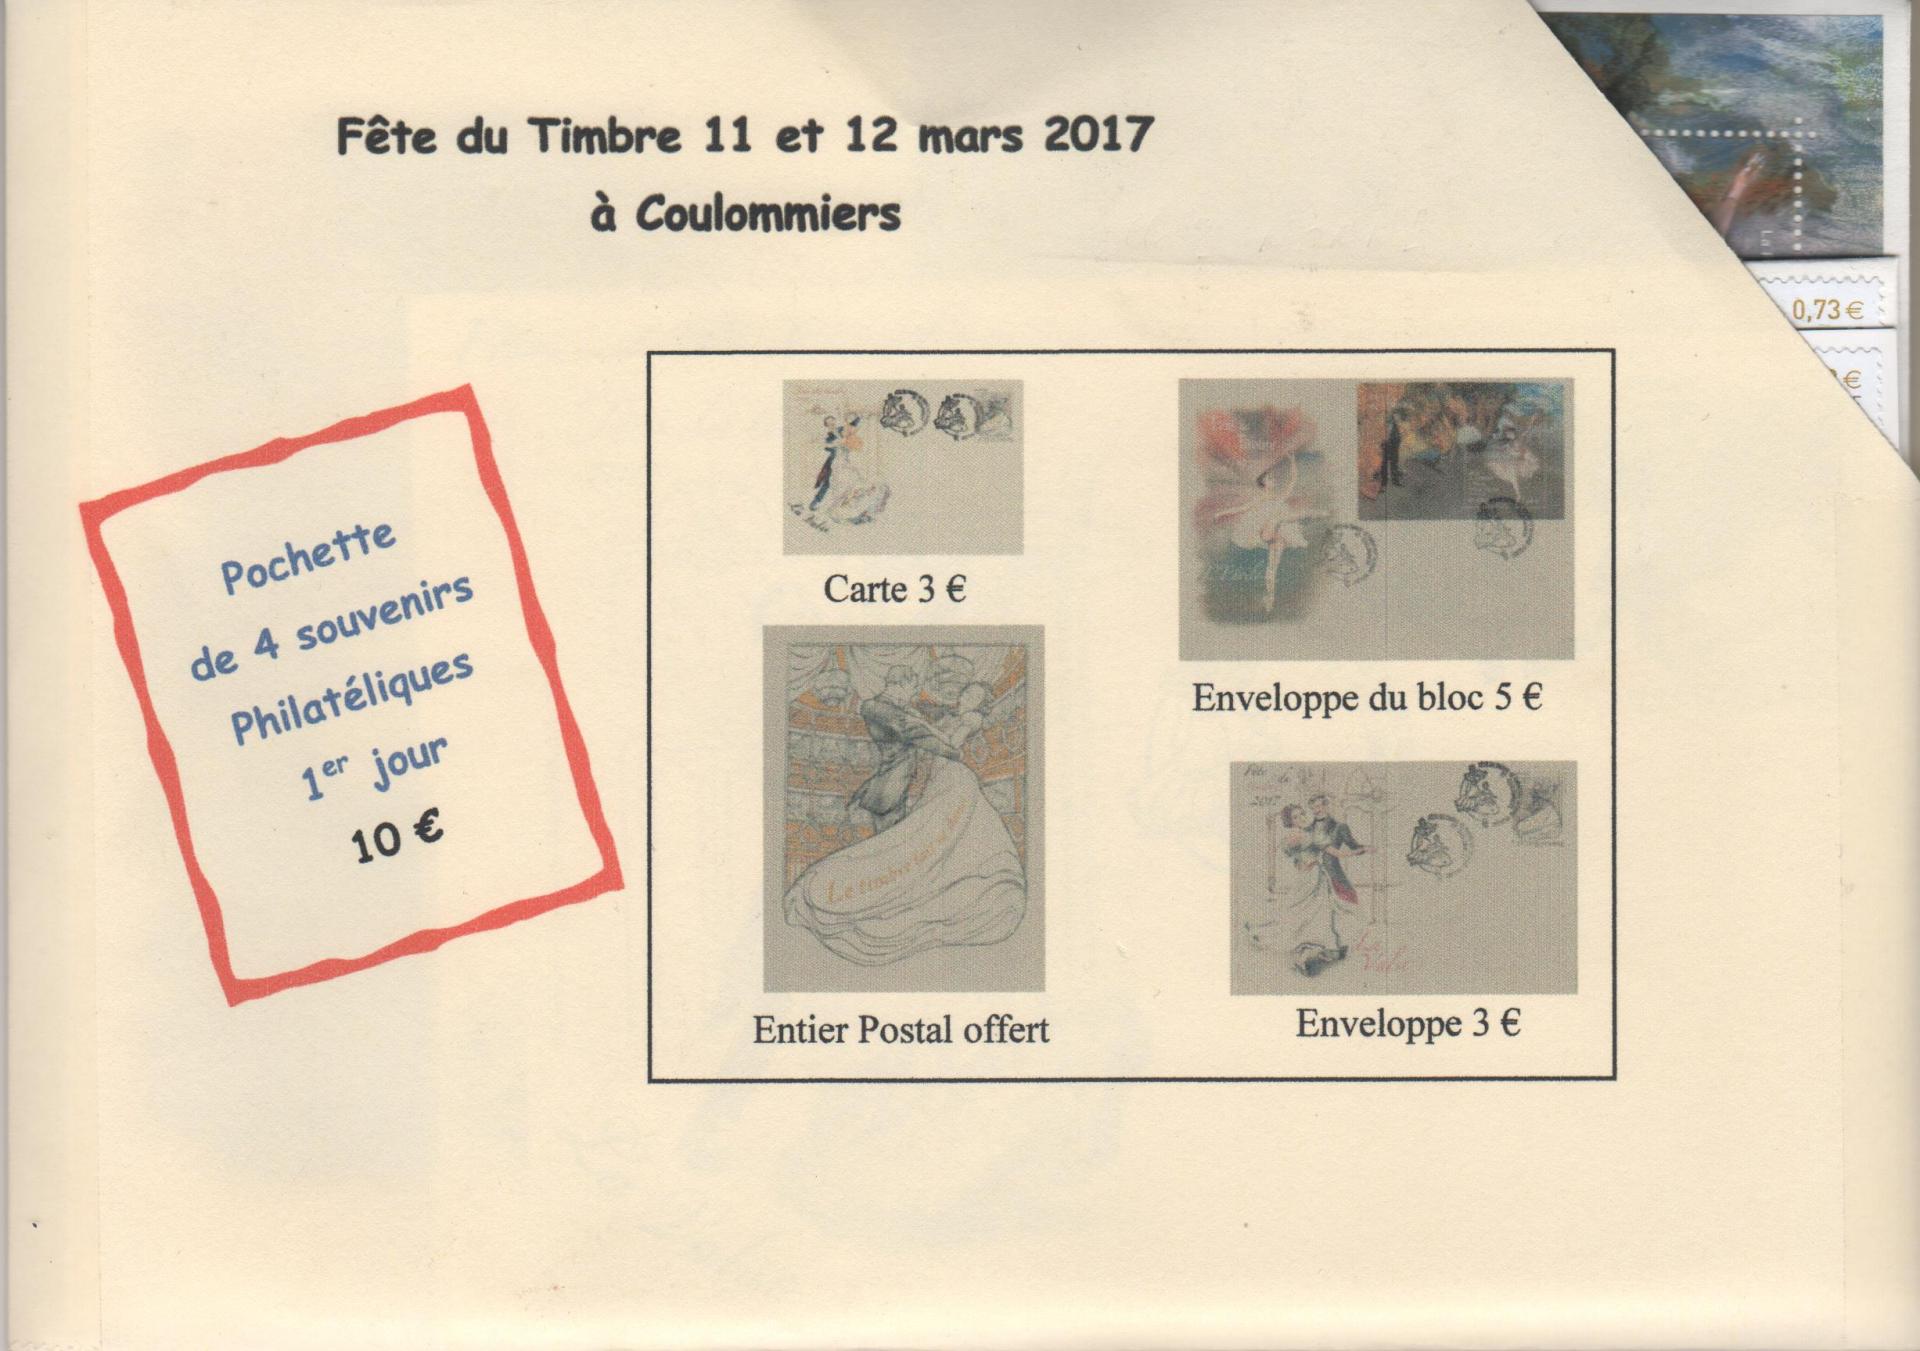 Enveloppe fete du timbre 2017